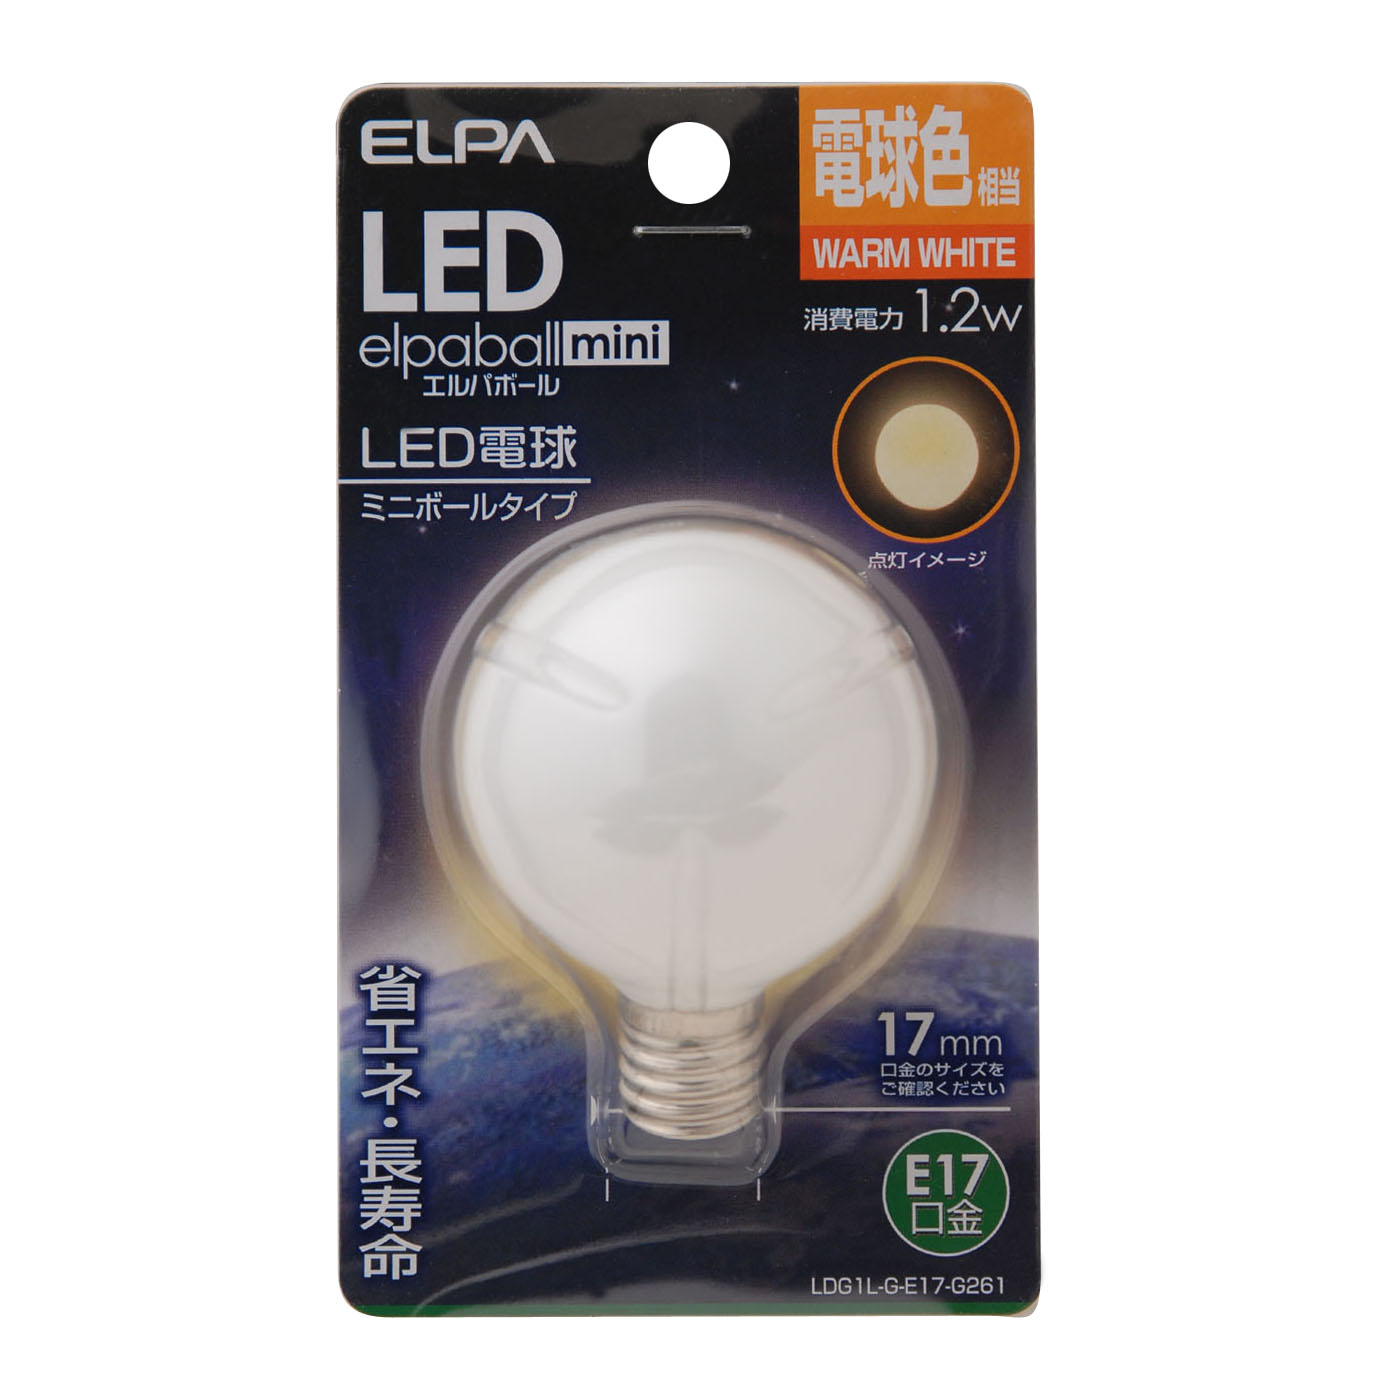 LDG1L-G-E17-G261 | ランプ | ELPA 朝日電器 LED電球エルパボールmini 